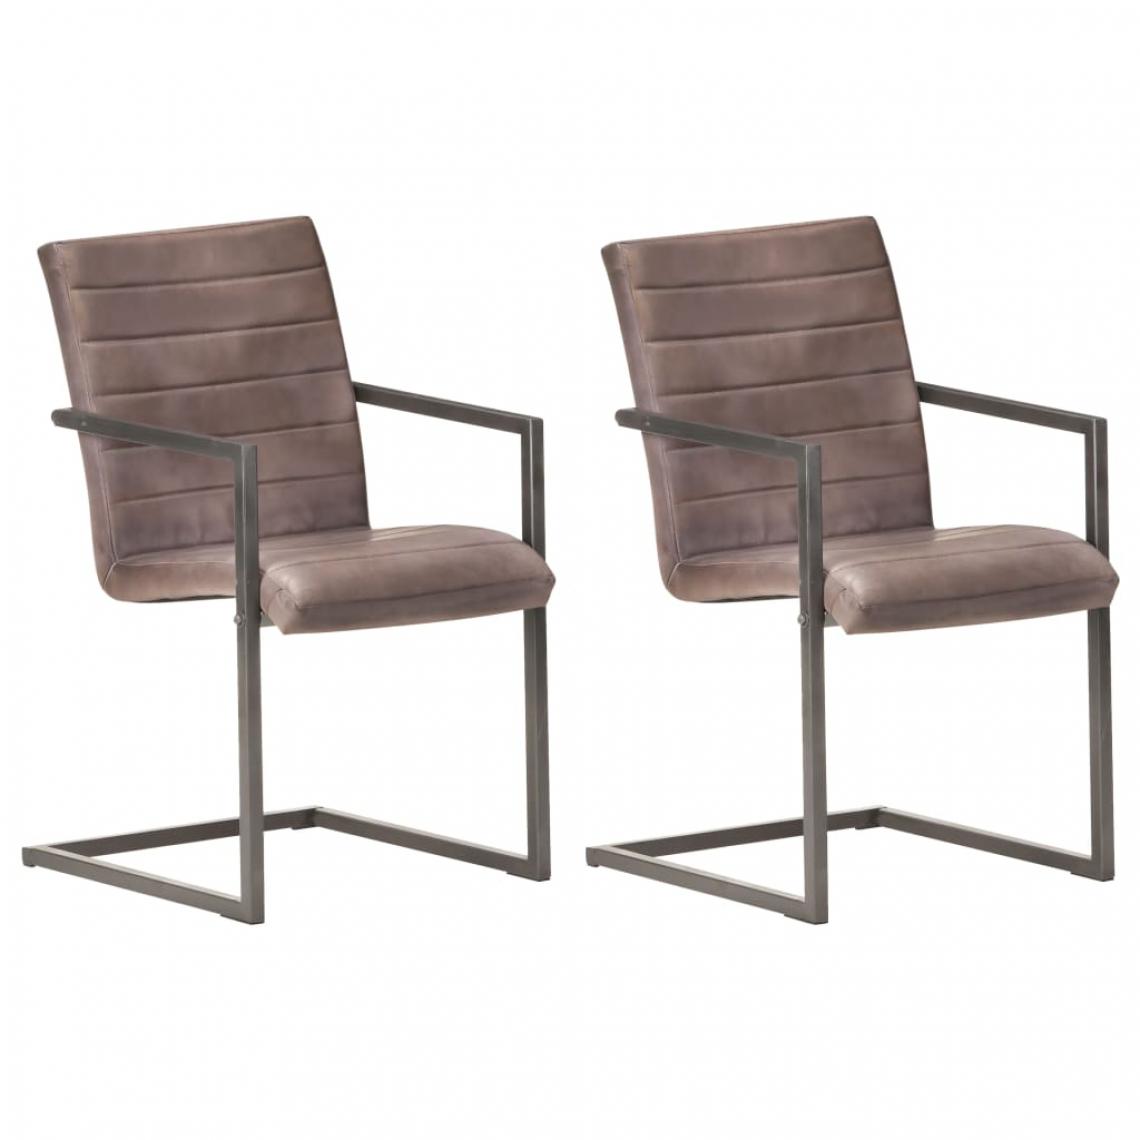 Icaverne - Inedit Fauteuils et chaises serie Copenhague Chaises de salle à manger cantilever 2pcs Marron Cuir véritable - Chaises